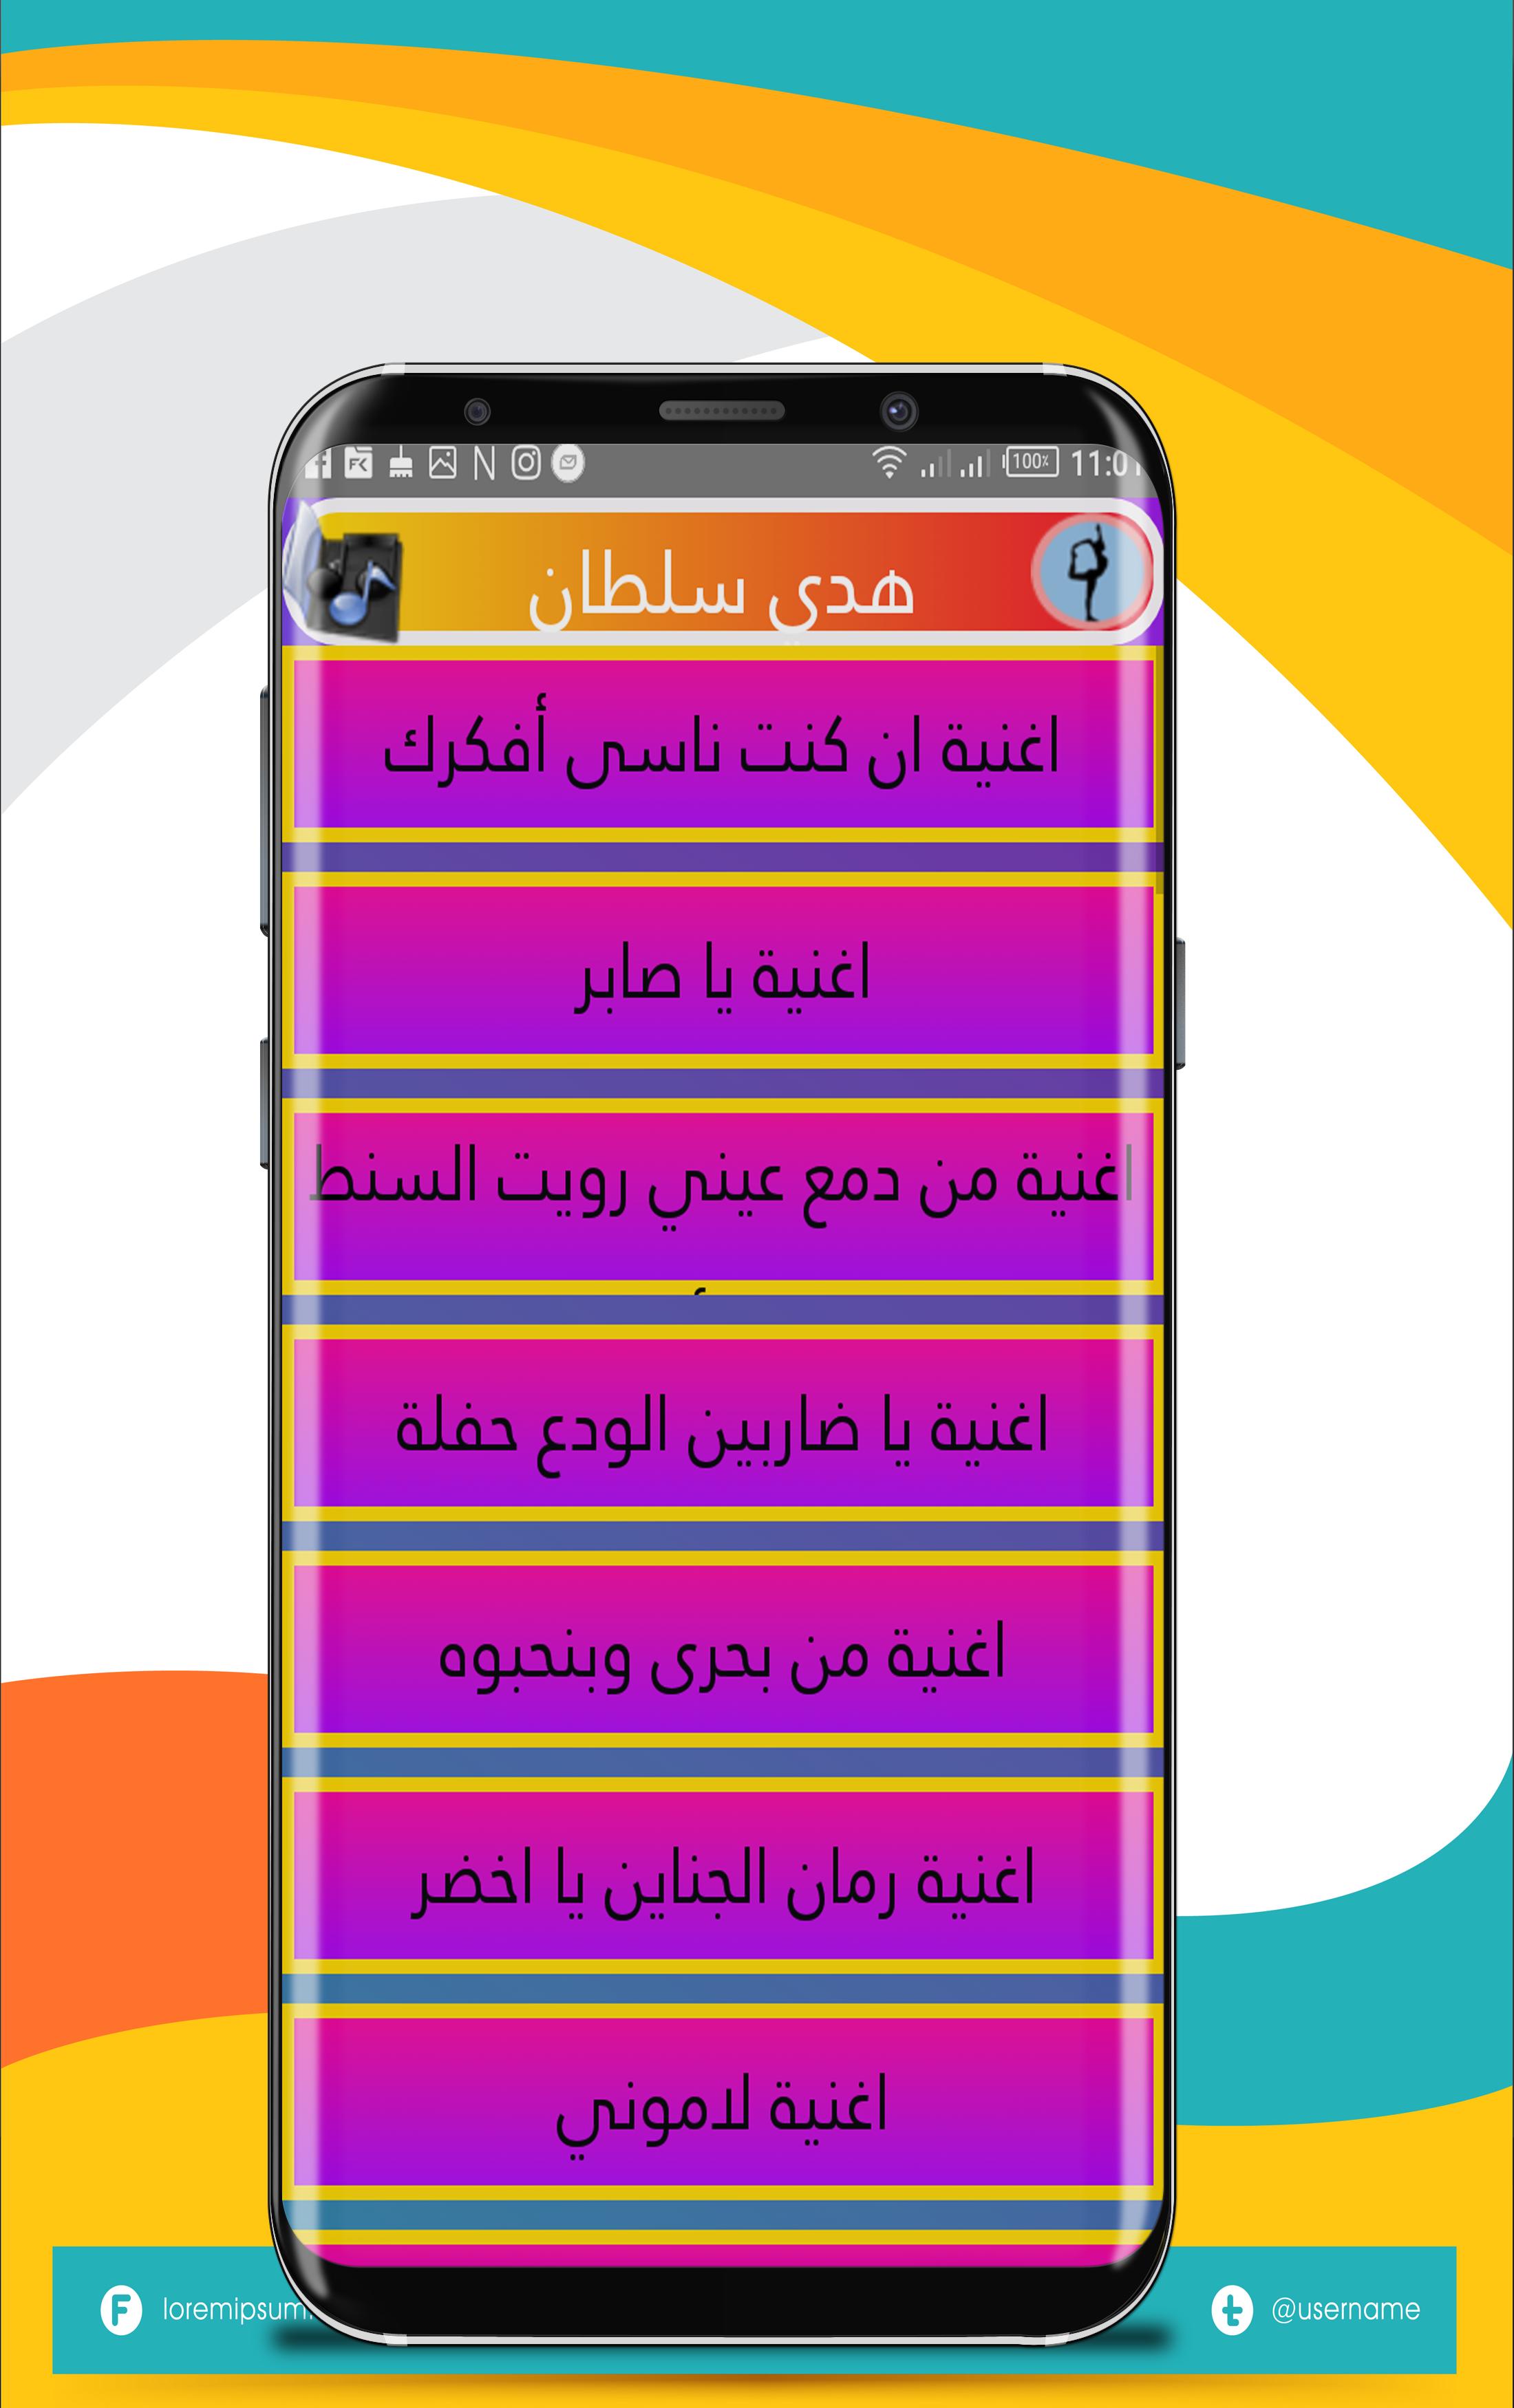 اغاني هدي سلطان for Android - APK Download